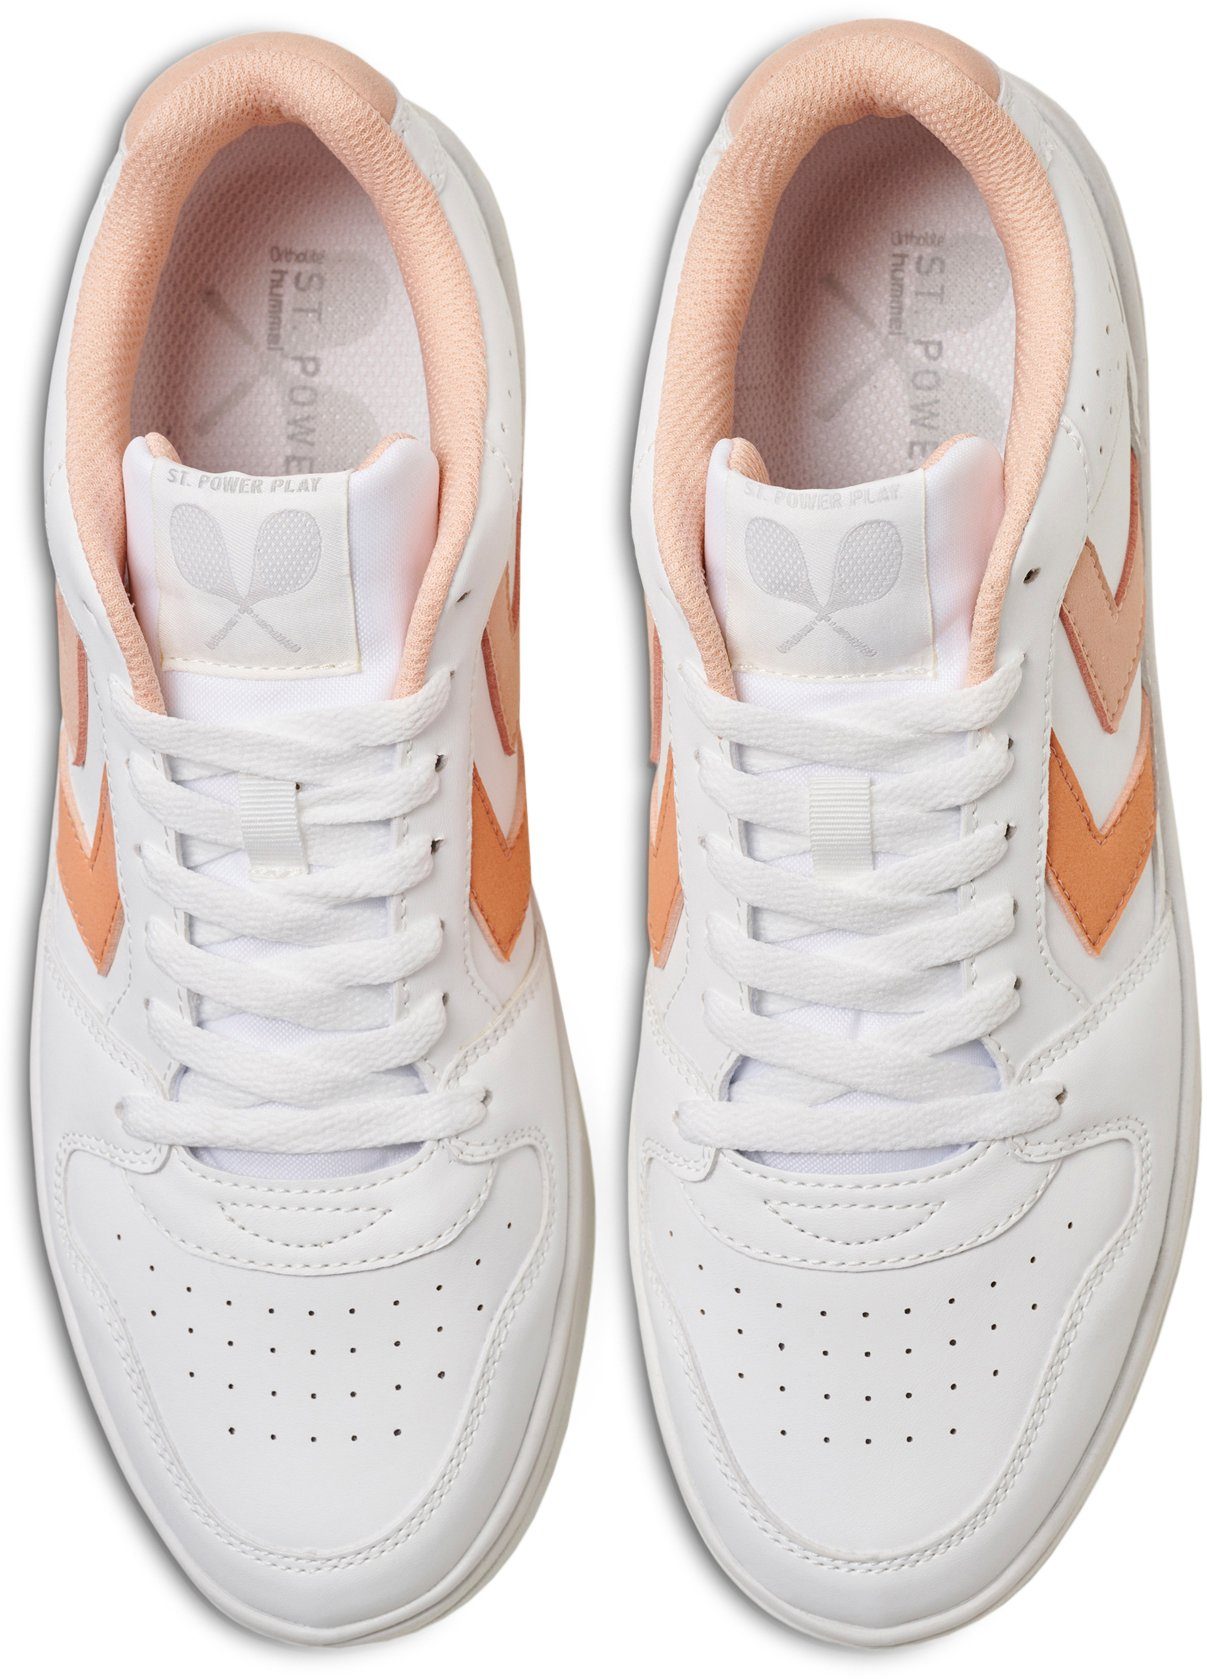 ST. hummel weiß-apricot WMNS POWER PLAY Sneaker